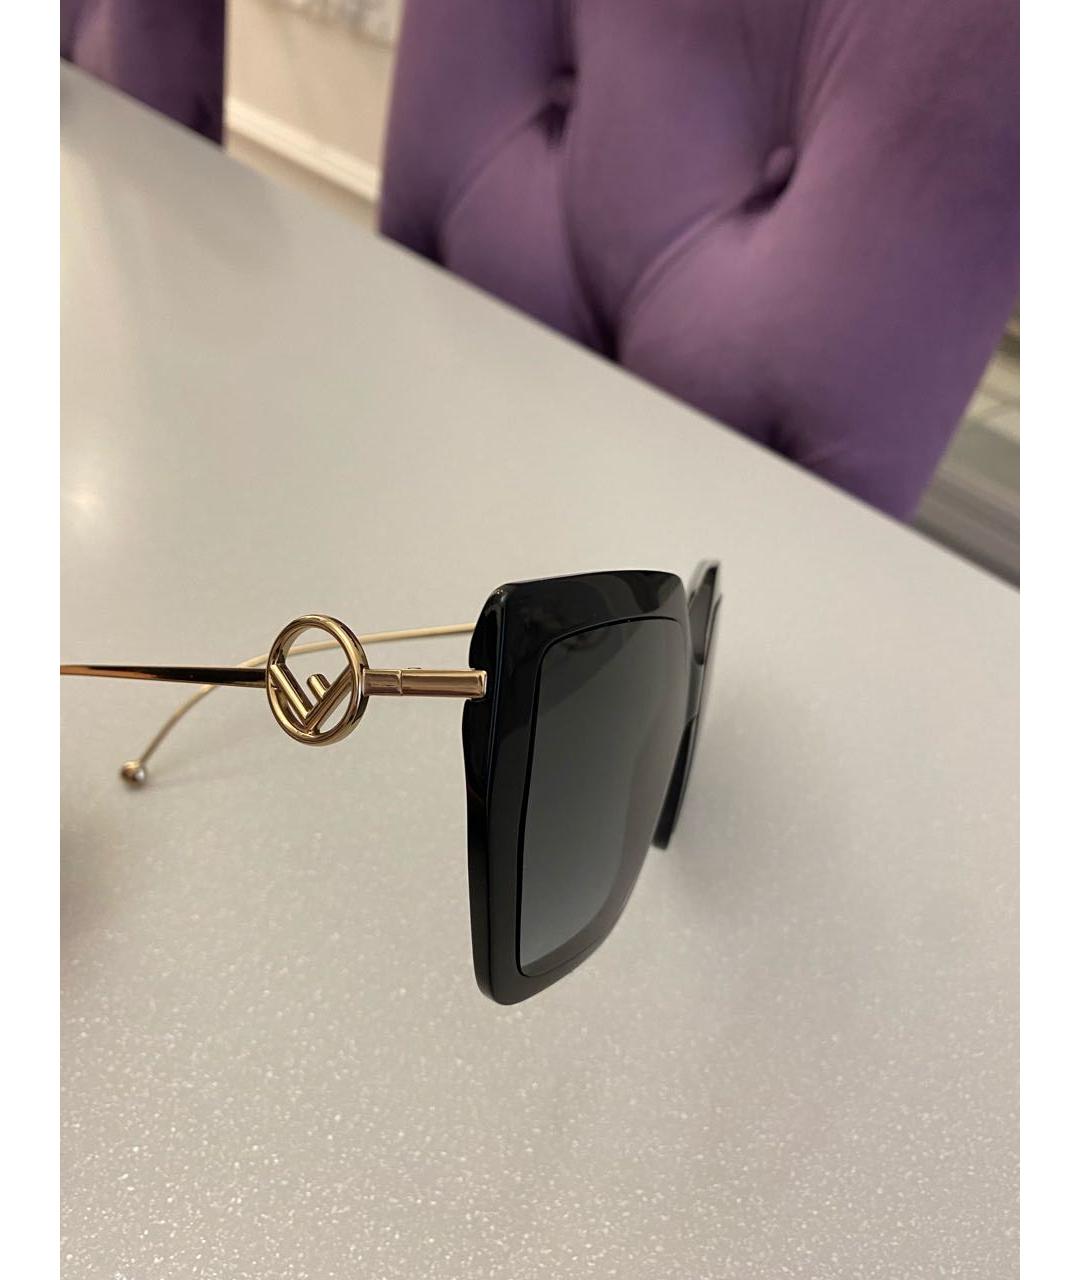 FENDI Черные металлические солнцезащитные очки, фото 3